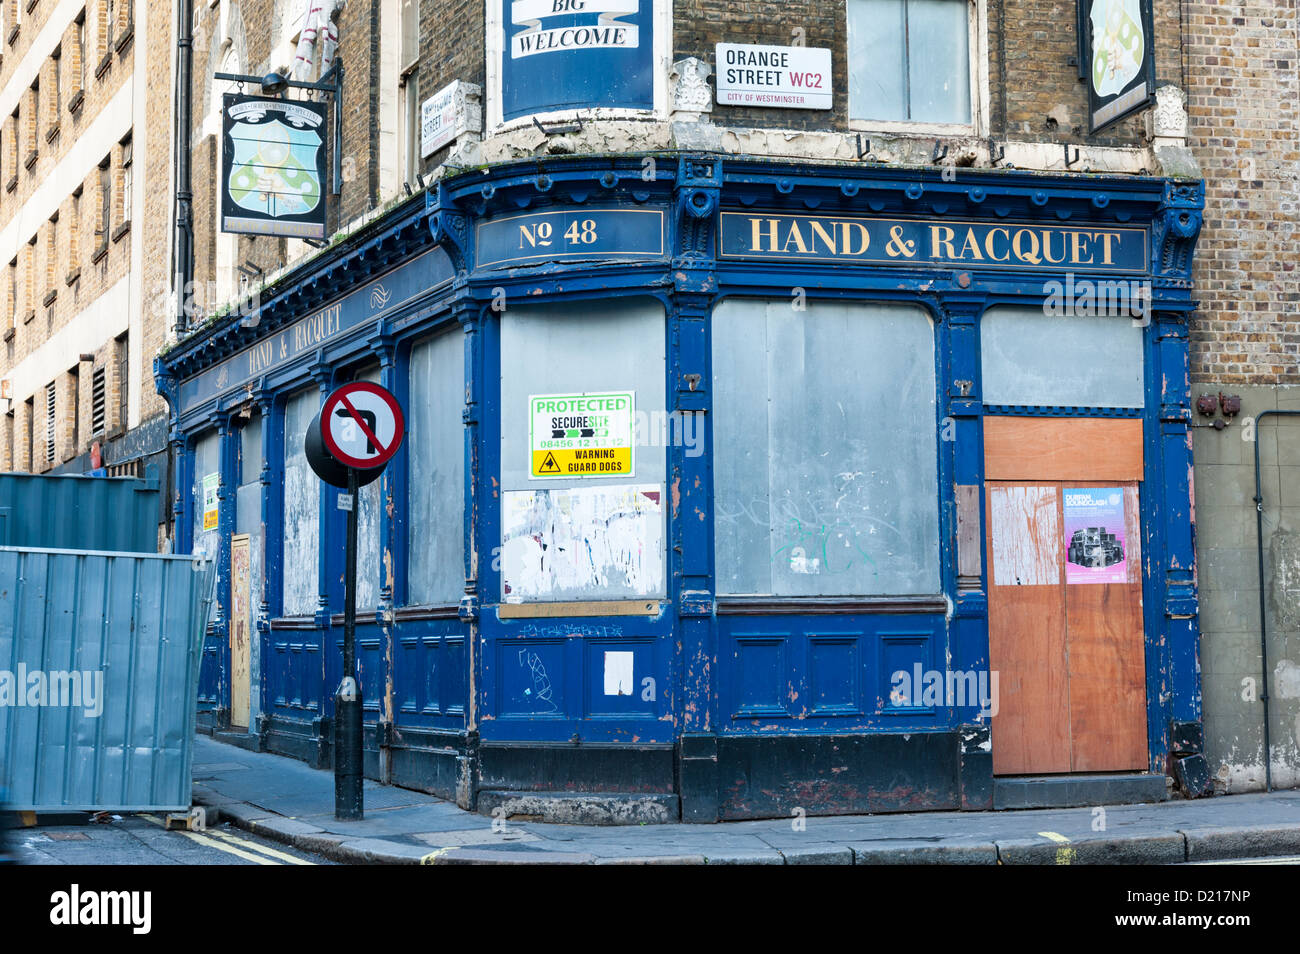 La raquette et la main désaffectées bâtiment pub Orange Street et Wardour Street London UK Banque D'Images